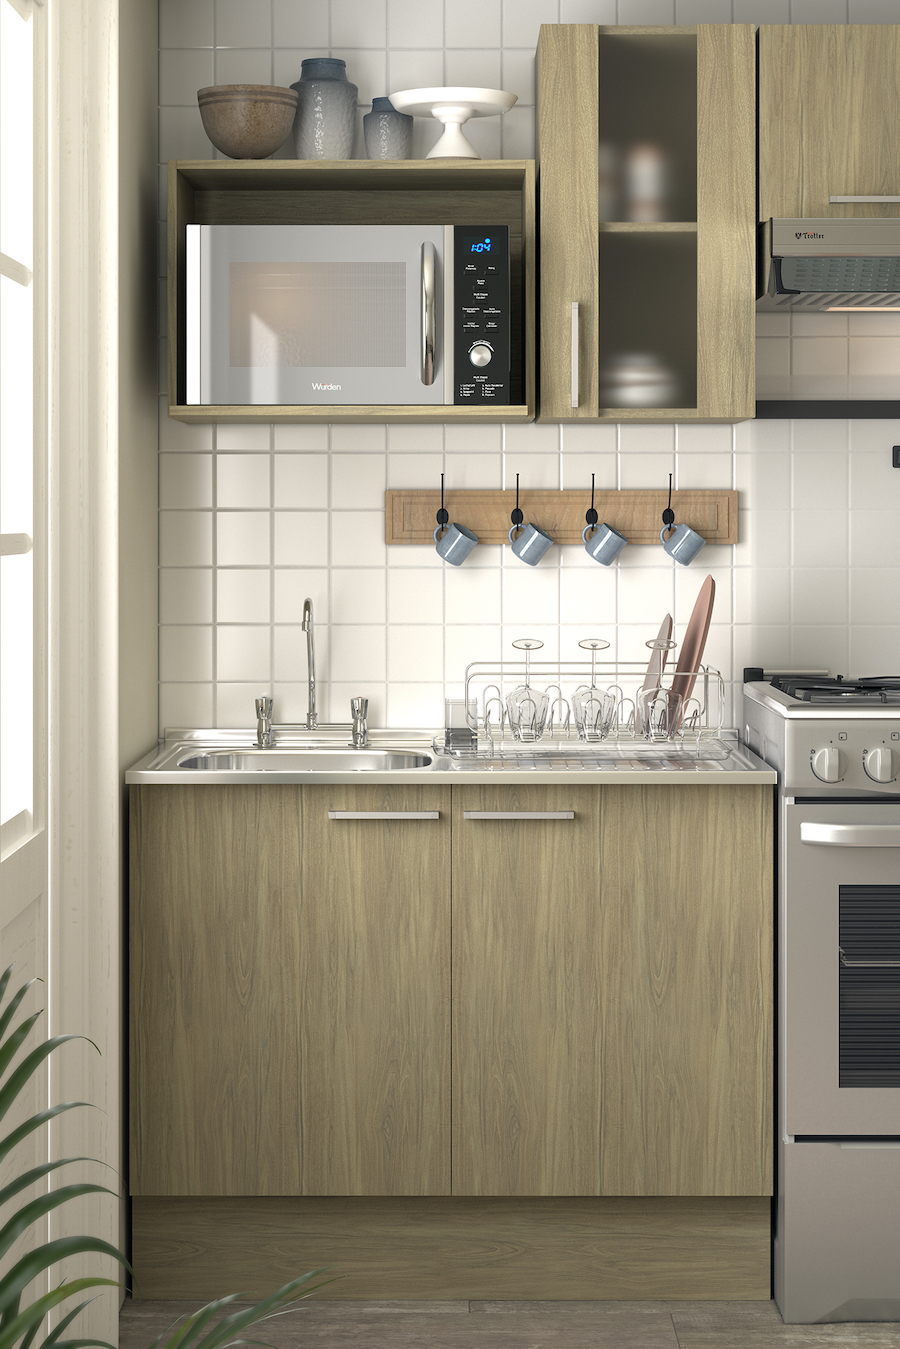 Mueble de cocina de madera con lavaplatos incorporado. Los muebles superiores tienen espacio para guardar utensilios y electrodomésticos, como un microondas. A su costado se ve parte de una cocina y su respectiva campana.